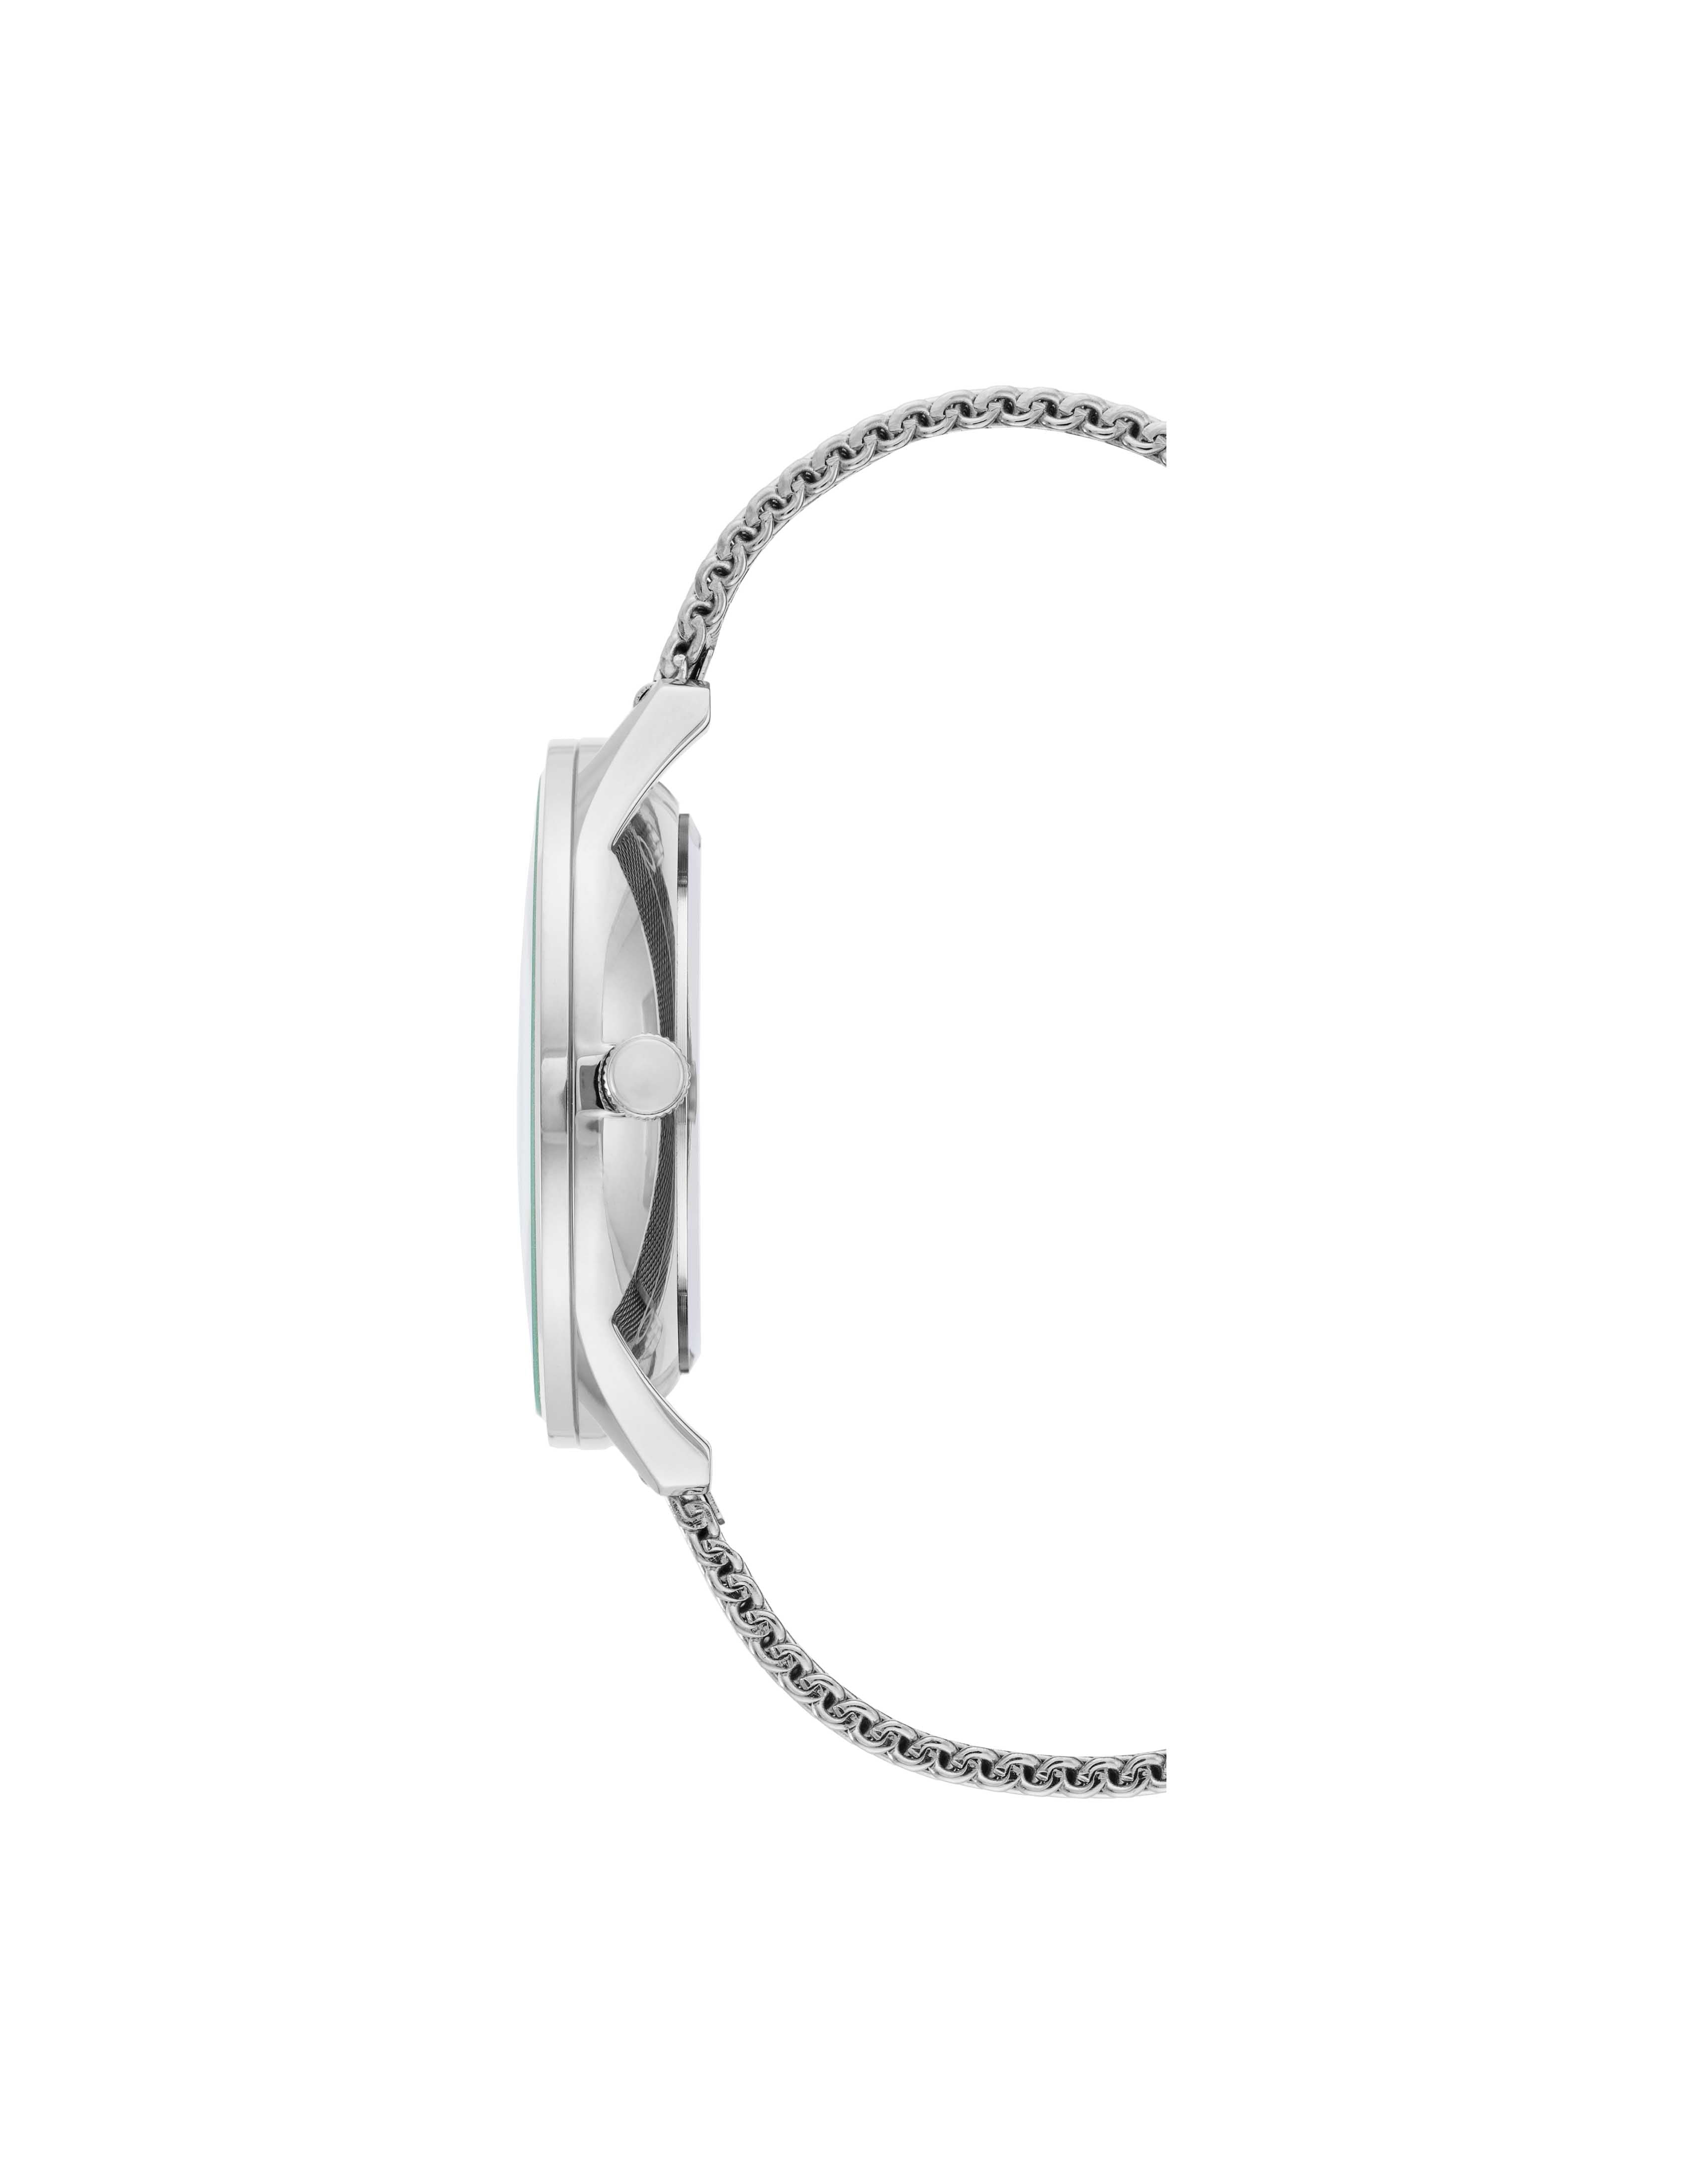 AG6182-09 Silver Stainless Steel Mesh Bracelet Watch by Antoneli for Women  - 1 Pc Watch - Walmart.com